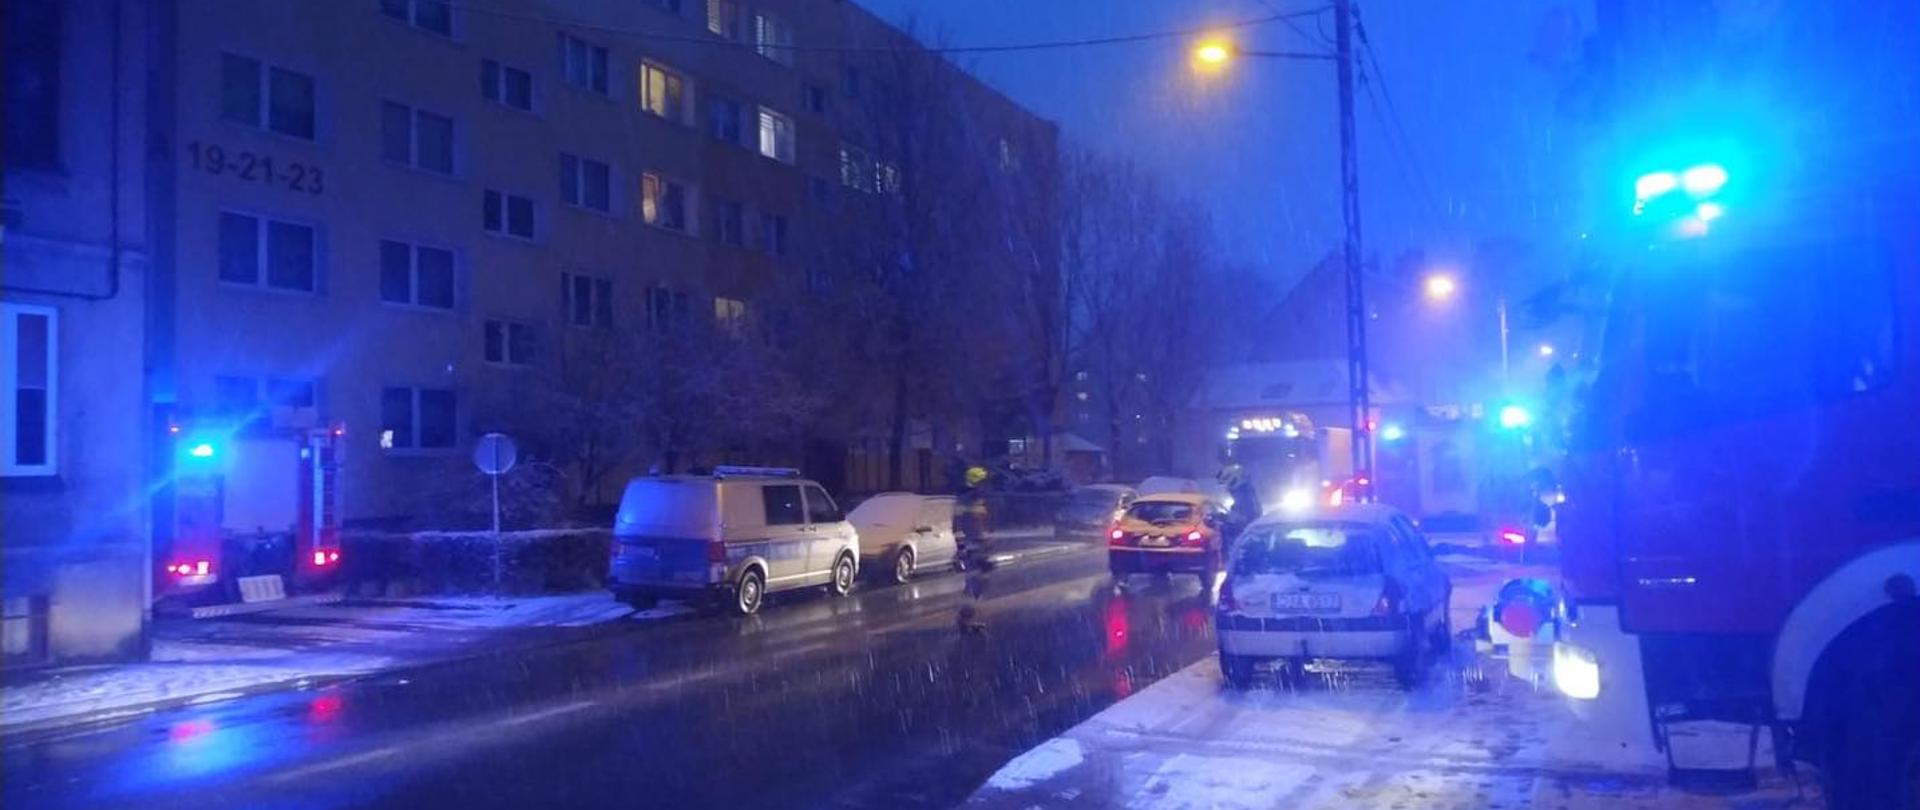 Obraz przedstawia pojazdy pożarnicze zaparkowane przy ul. Starojaworskiej. Pojazdy z włączonymi światłami alarmowymi niebieskimi. Pora nocna. Opady deszczu i śniegu.